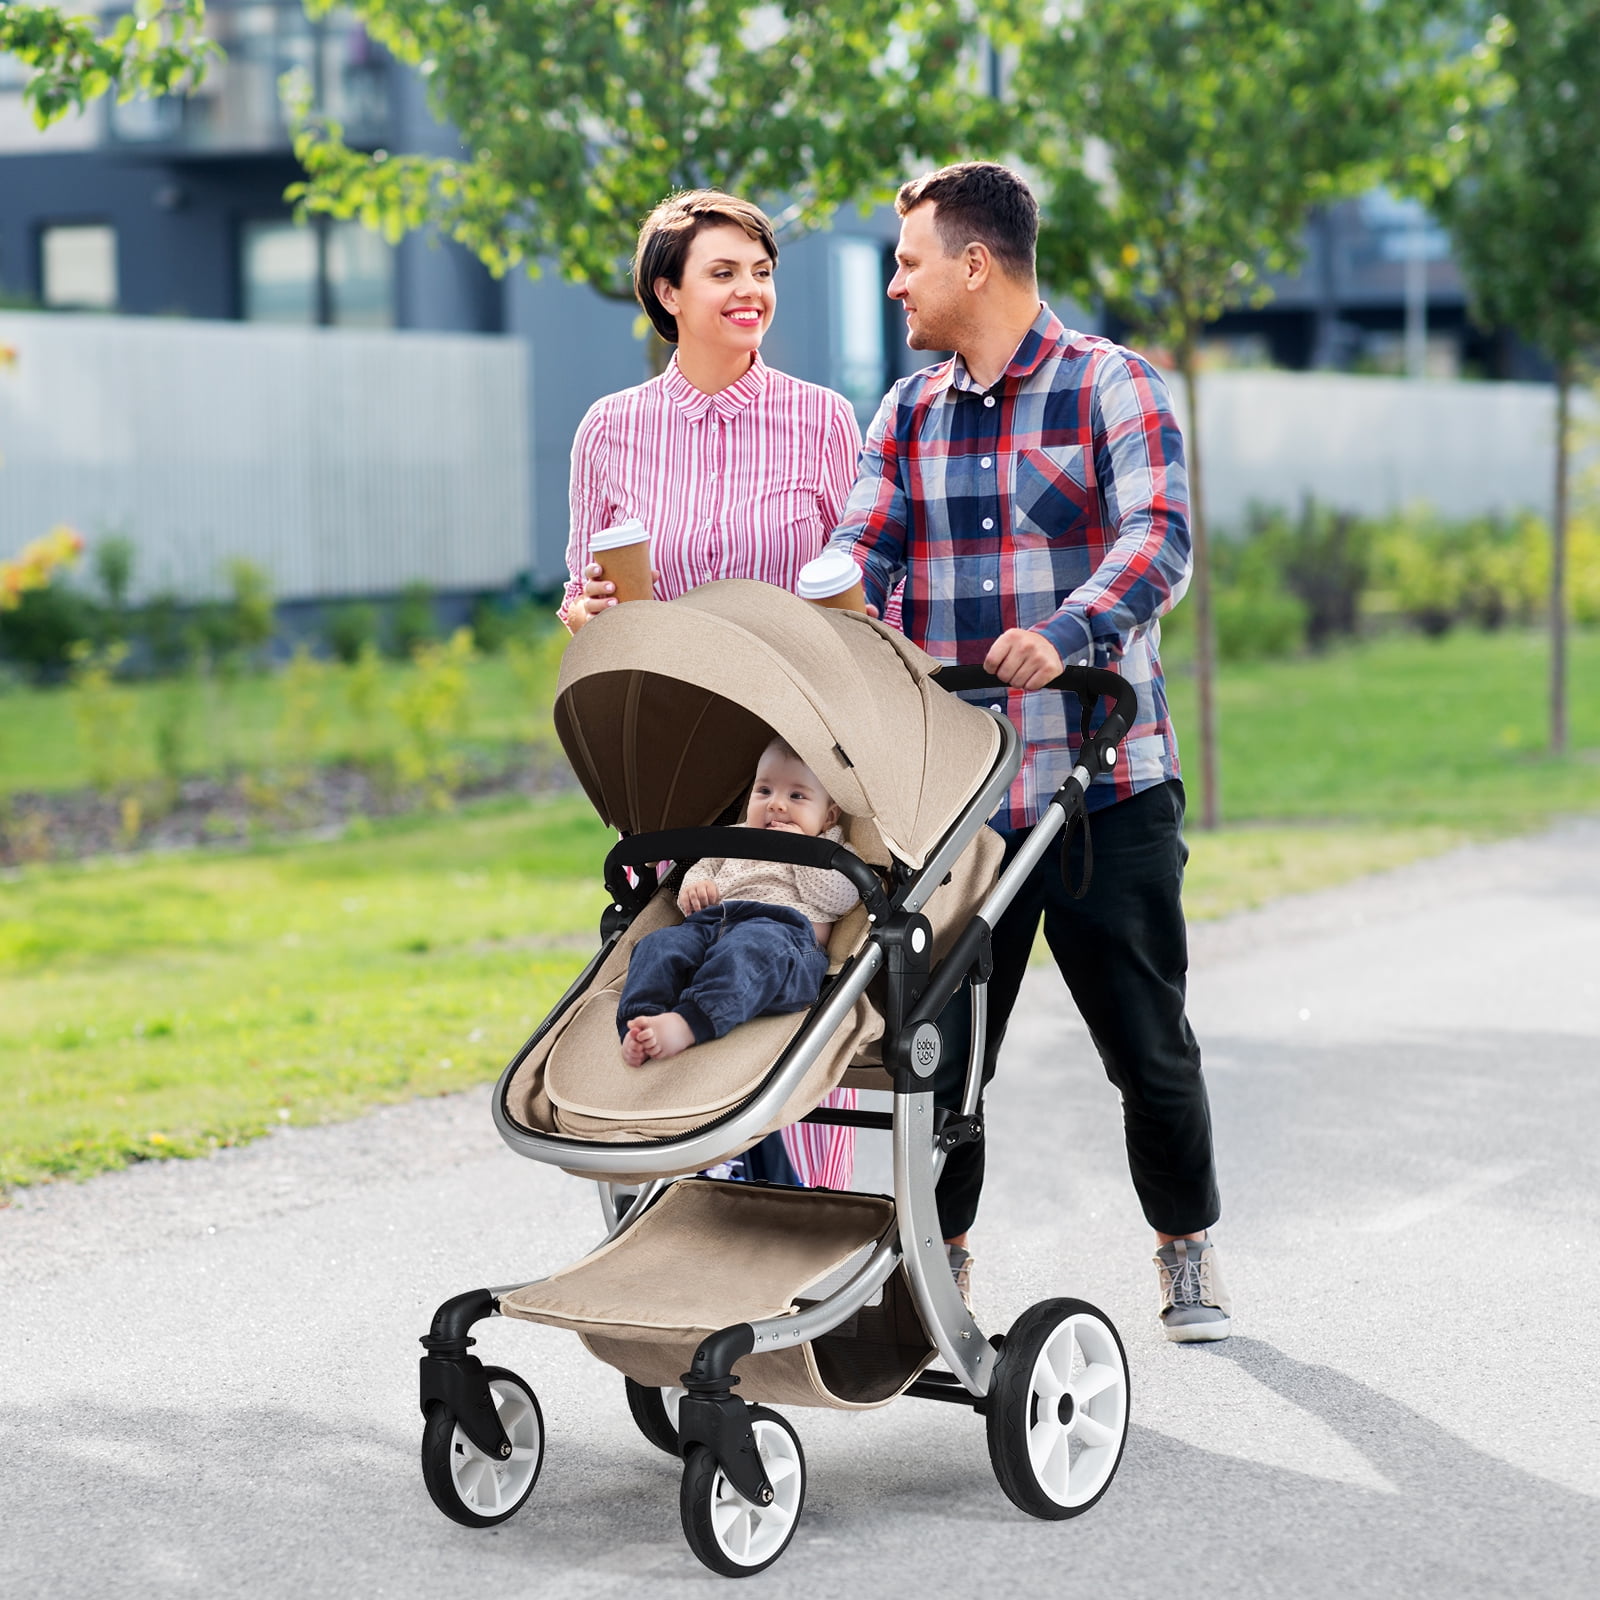 2020 New 2 in 1 Infant Travel Pram High-Grade Baby Stroller High